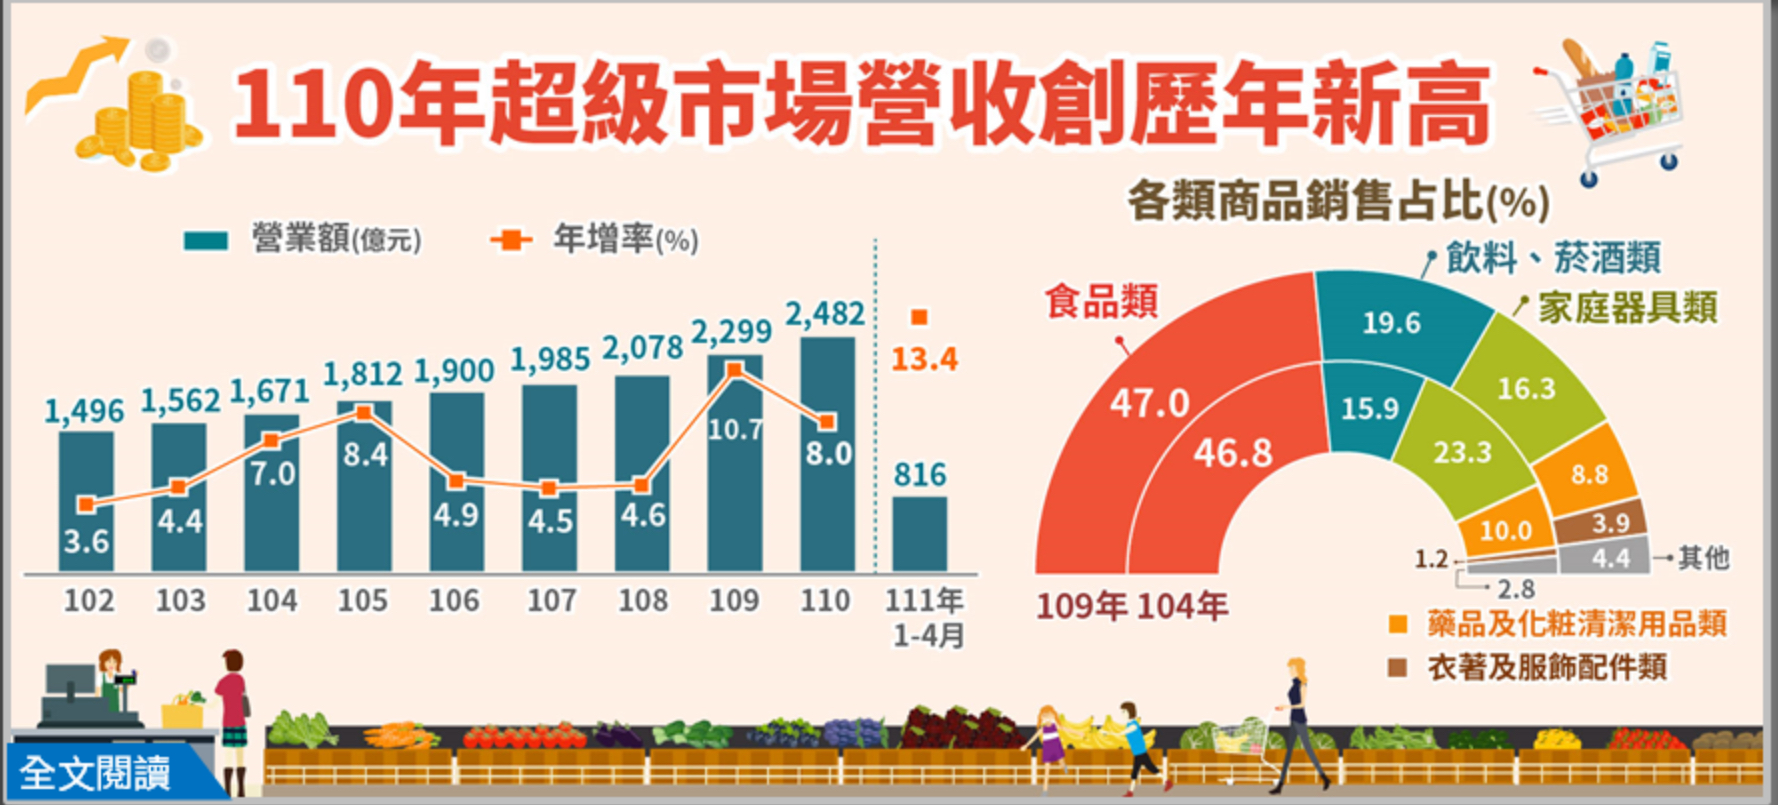 台湾経済:スーパーマーケットの売上は19年連続でプラス成長